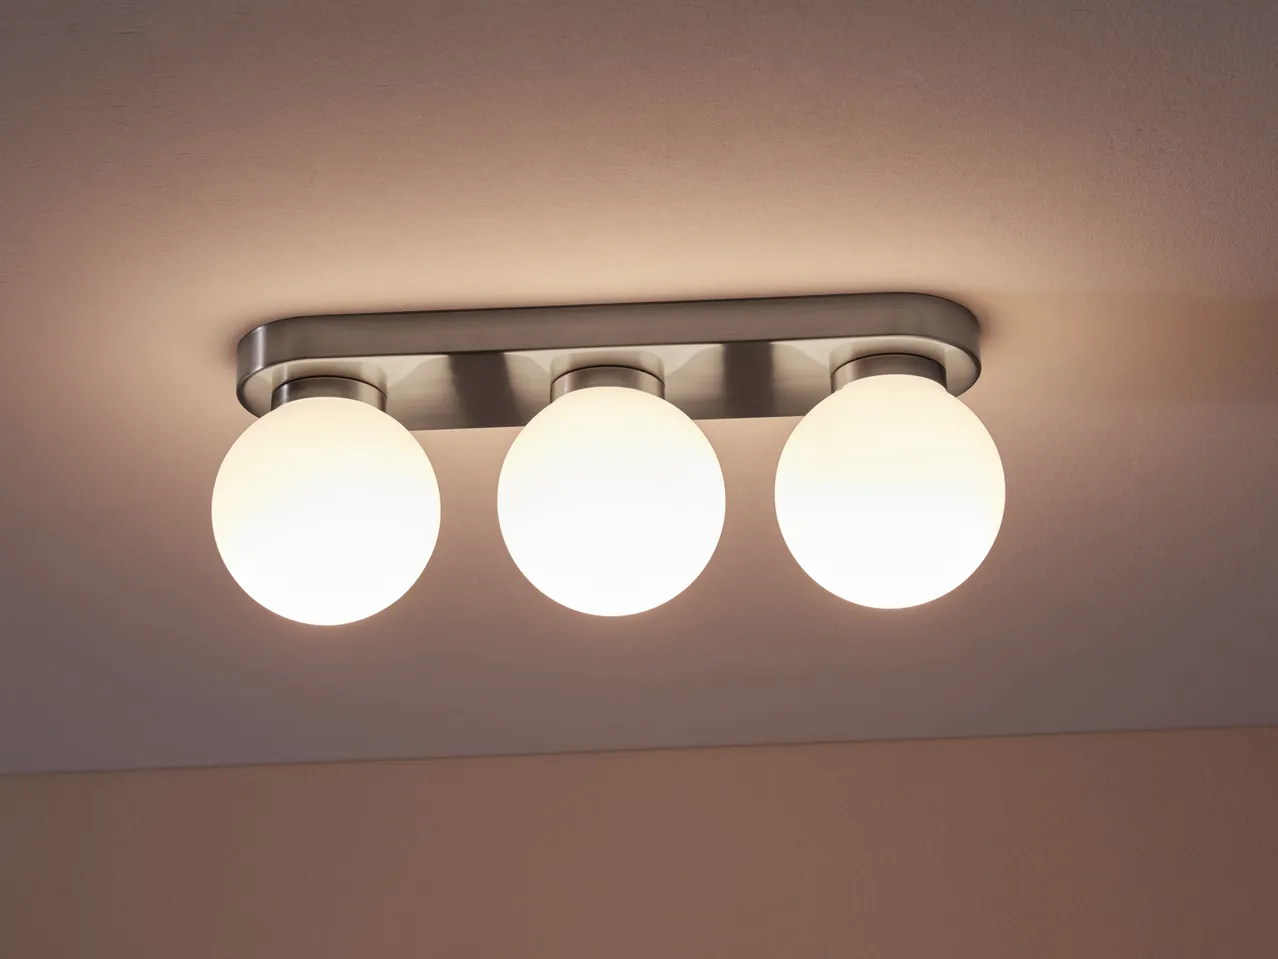 Lampada LED da soffitto , prezzo 29.99 EUR 
Lampada LED da soffitto 
- Risparmio ...